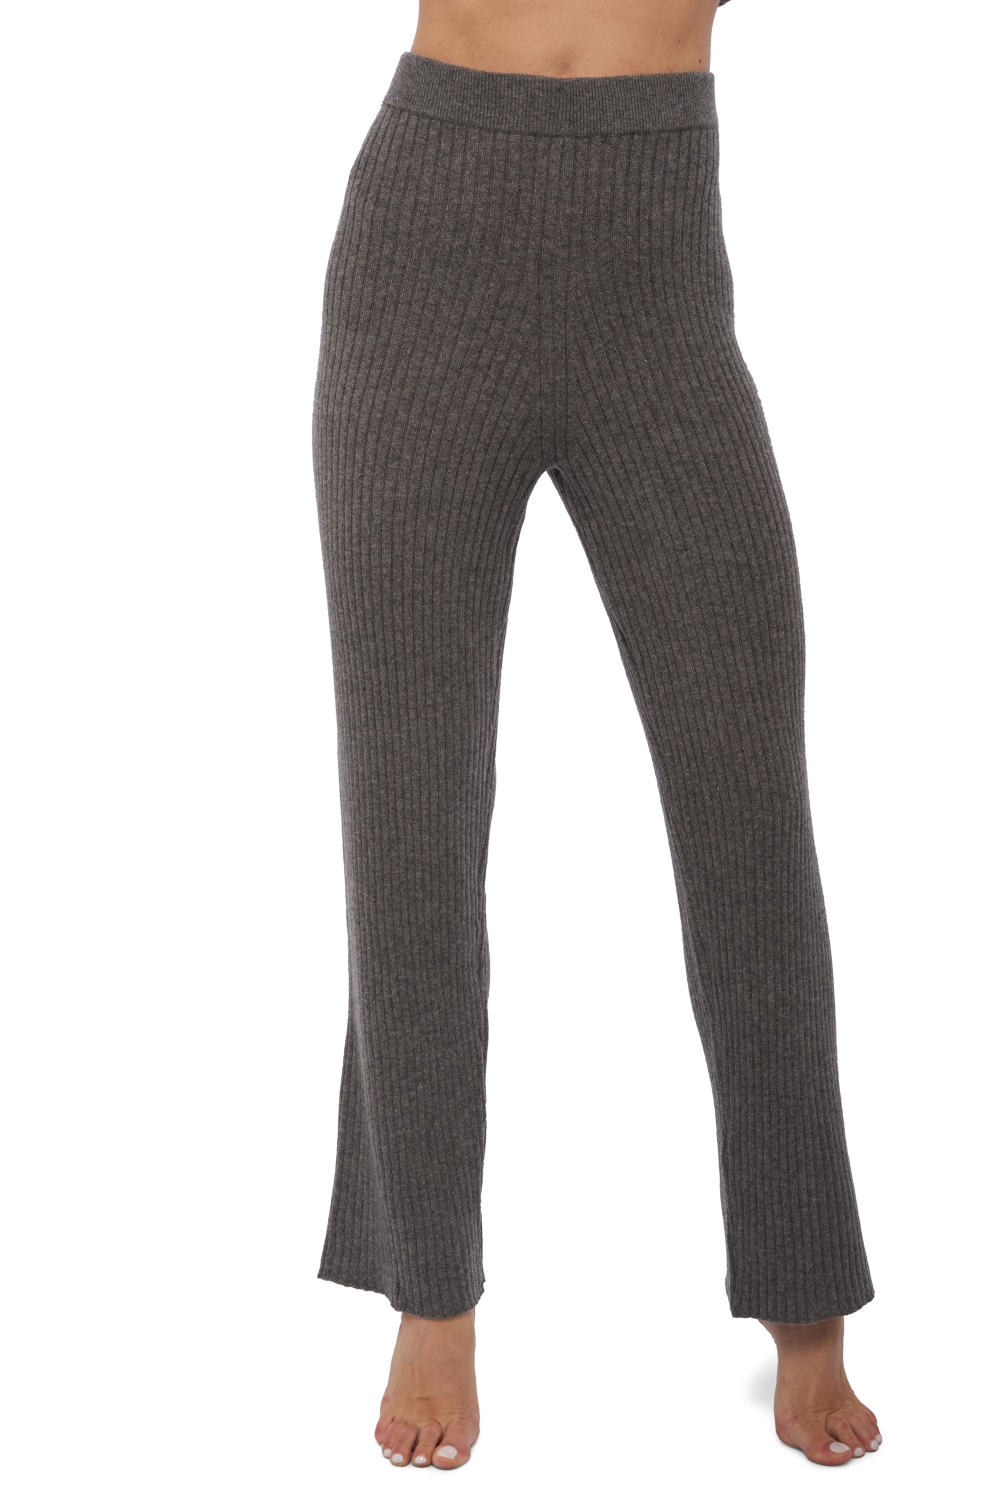 Cashmere cashmere donna pantaloni leggings avignon marmotta 2xl